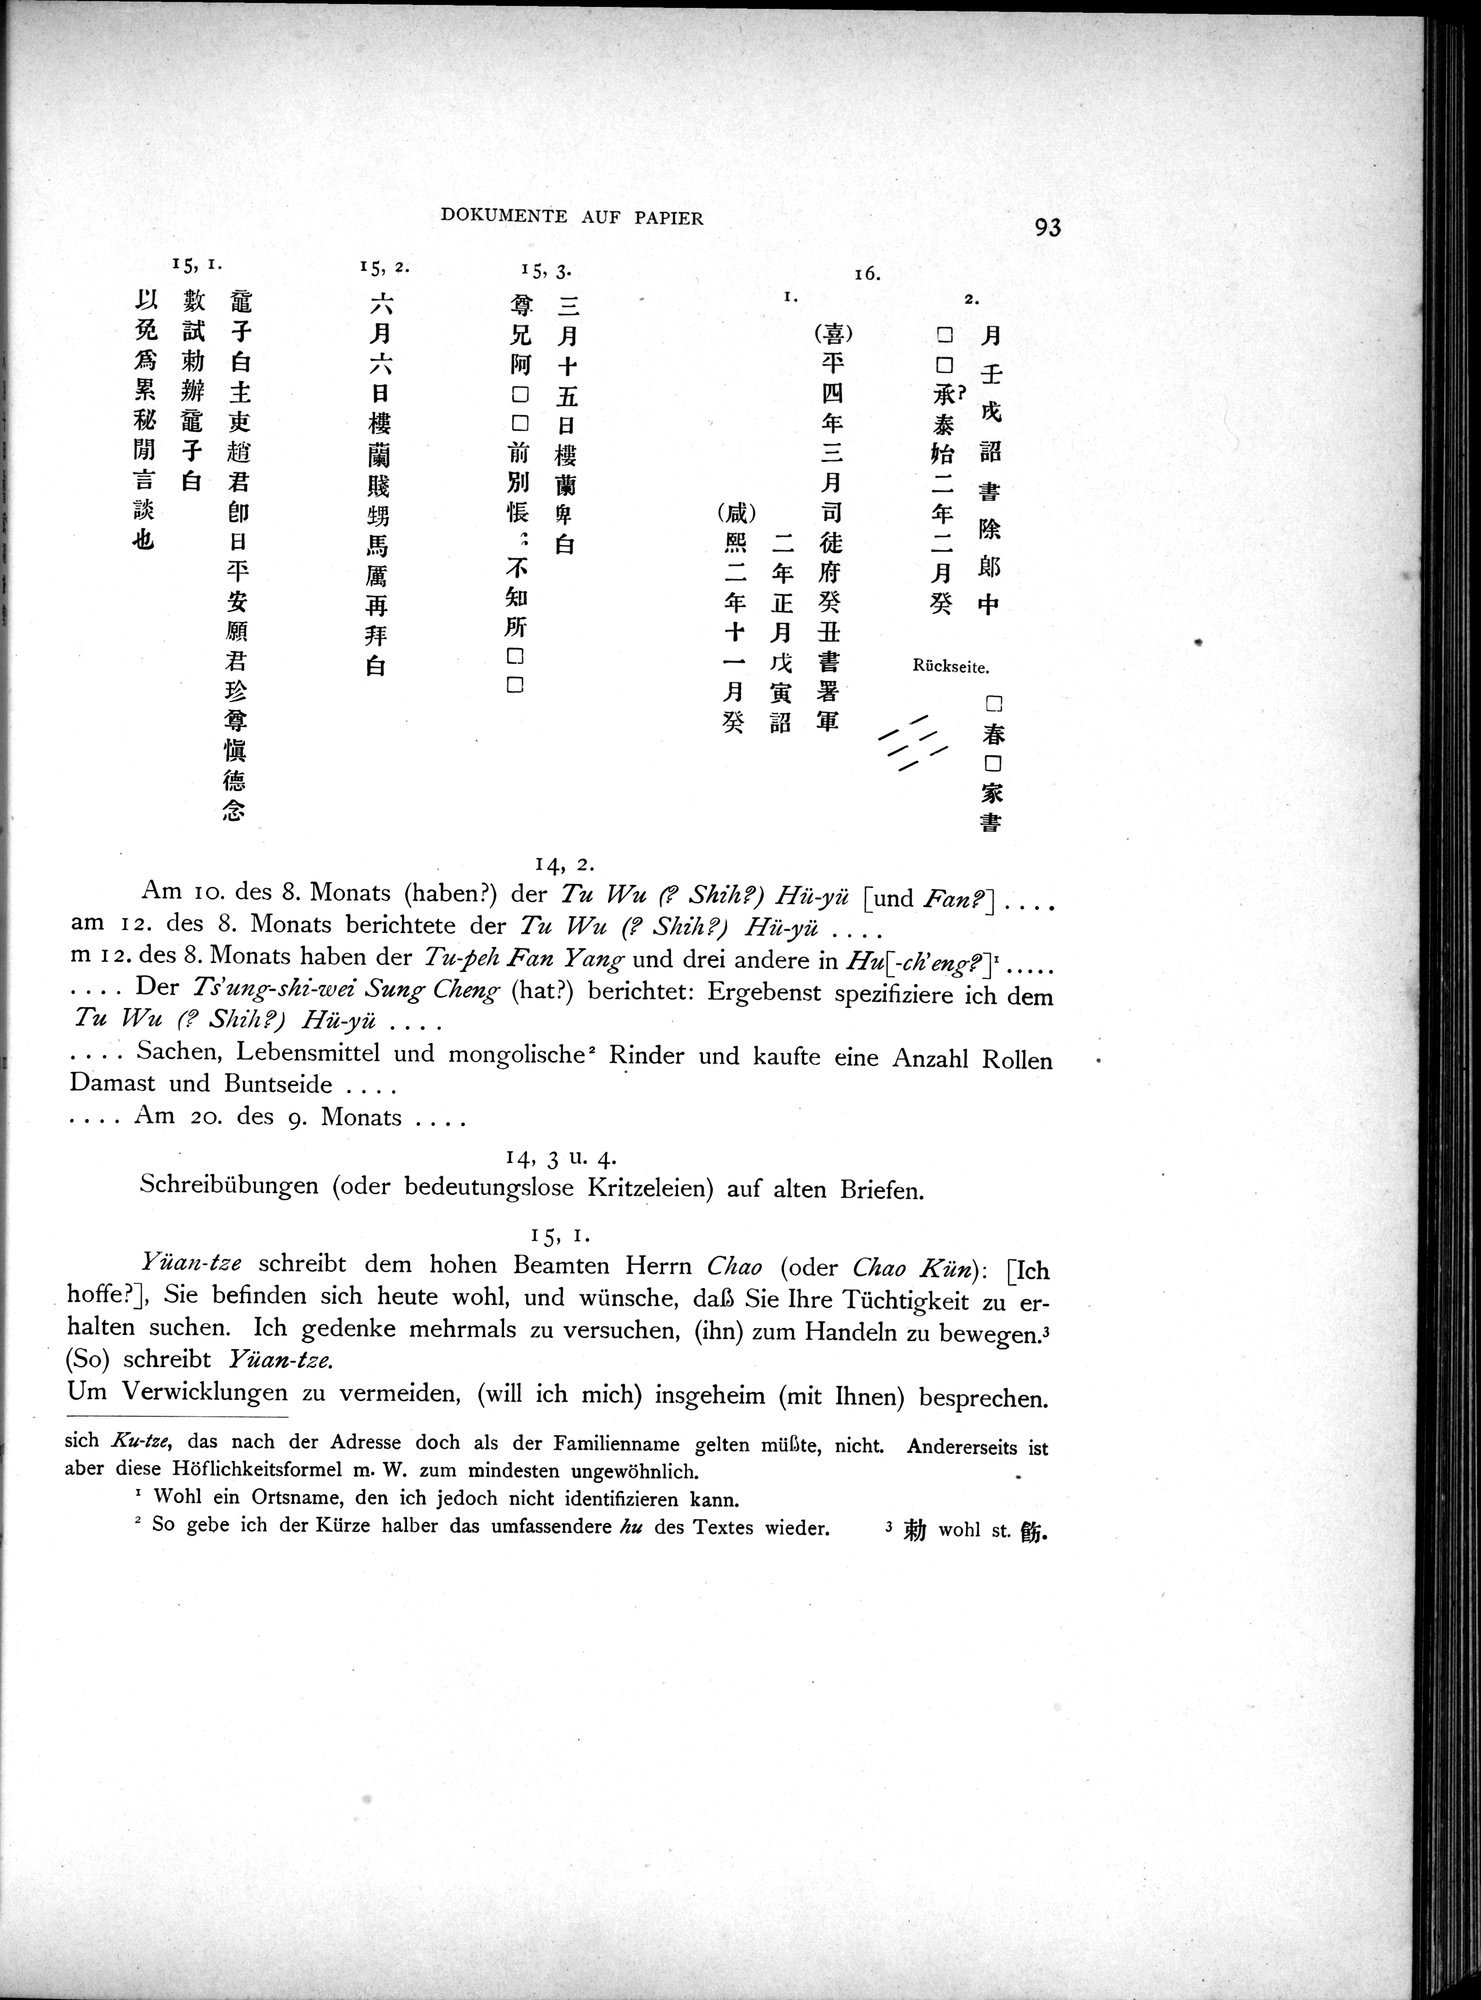 Die Chinesischen Handschriften- und sonstigen Kleinfunde Sven Hedins in Lou-lan : vol.1 / Page 117 (Grayscale High Resolution Image)